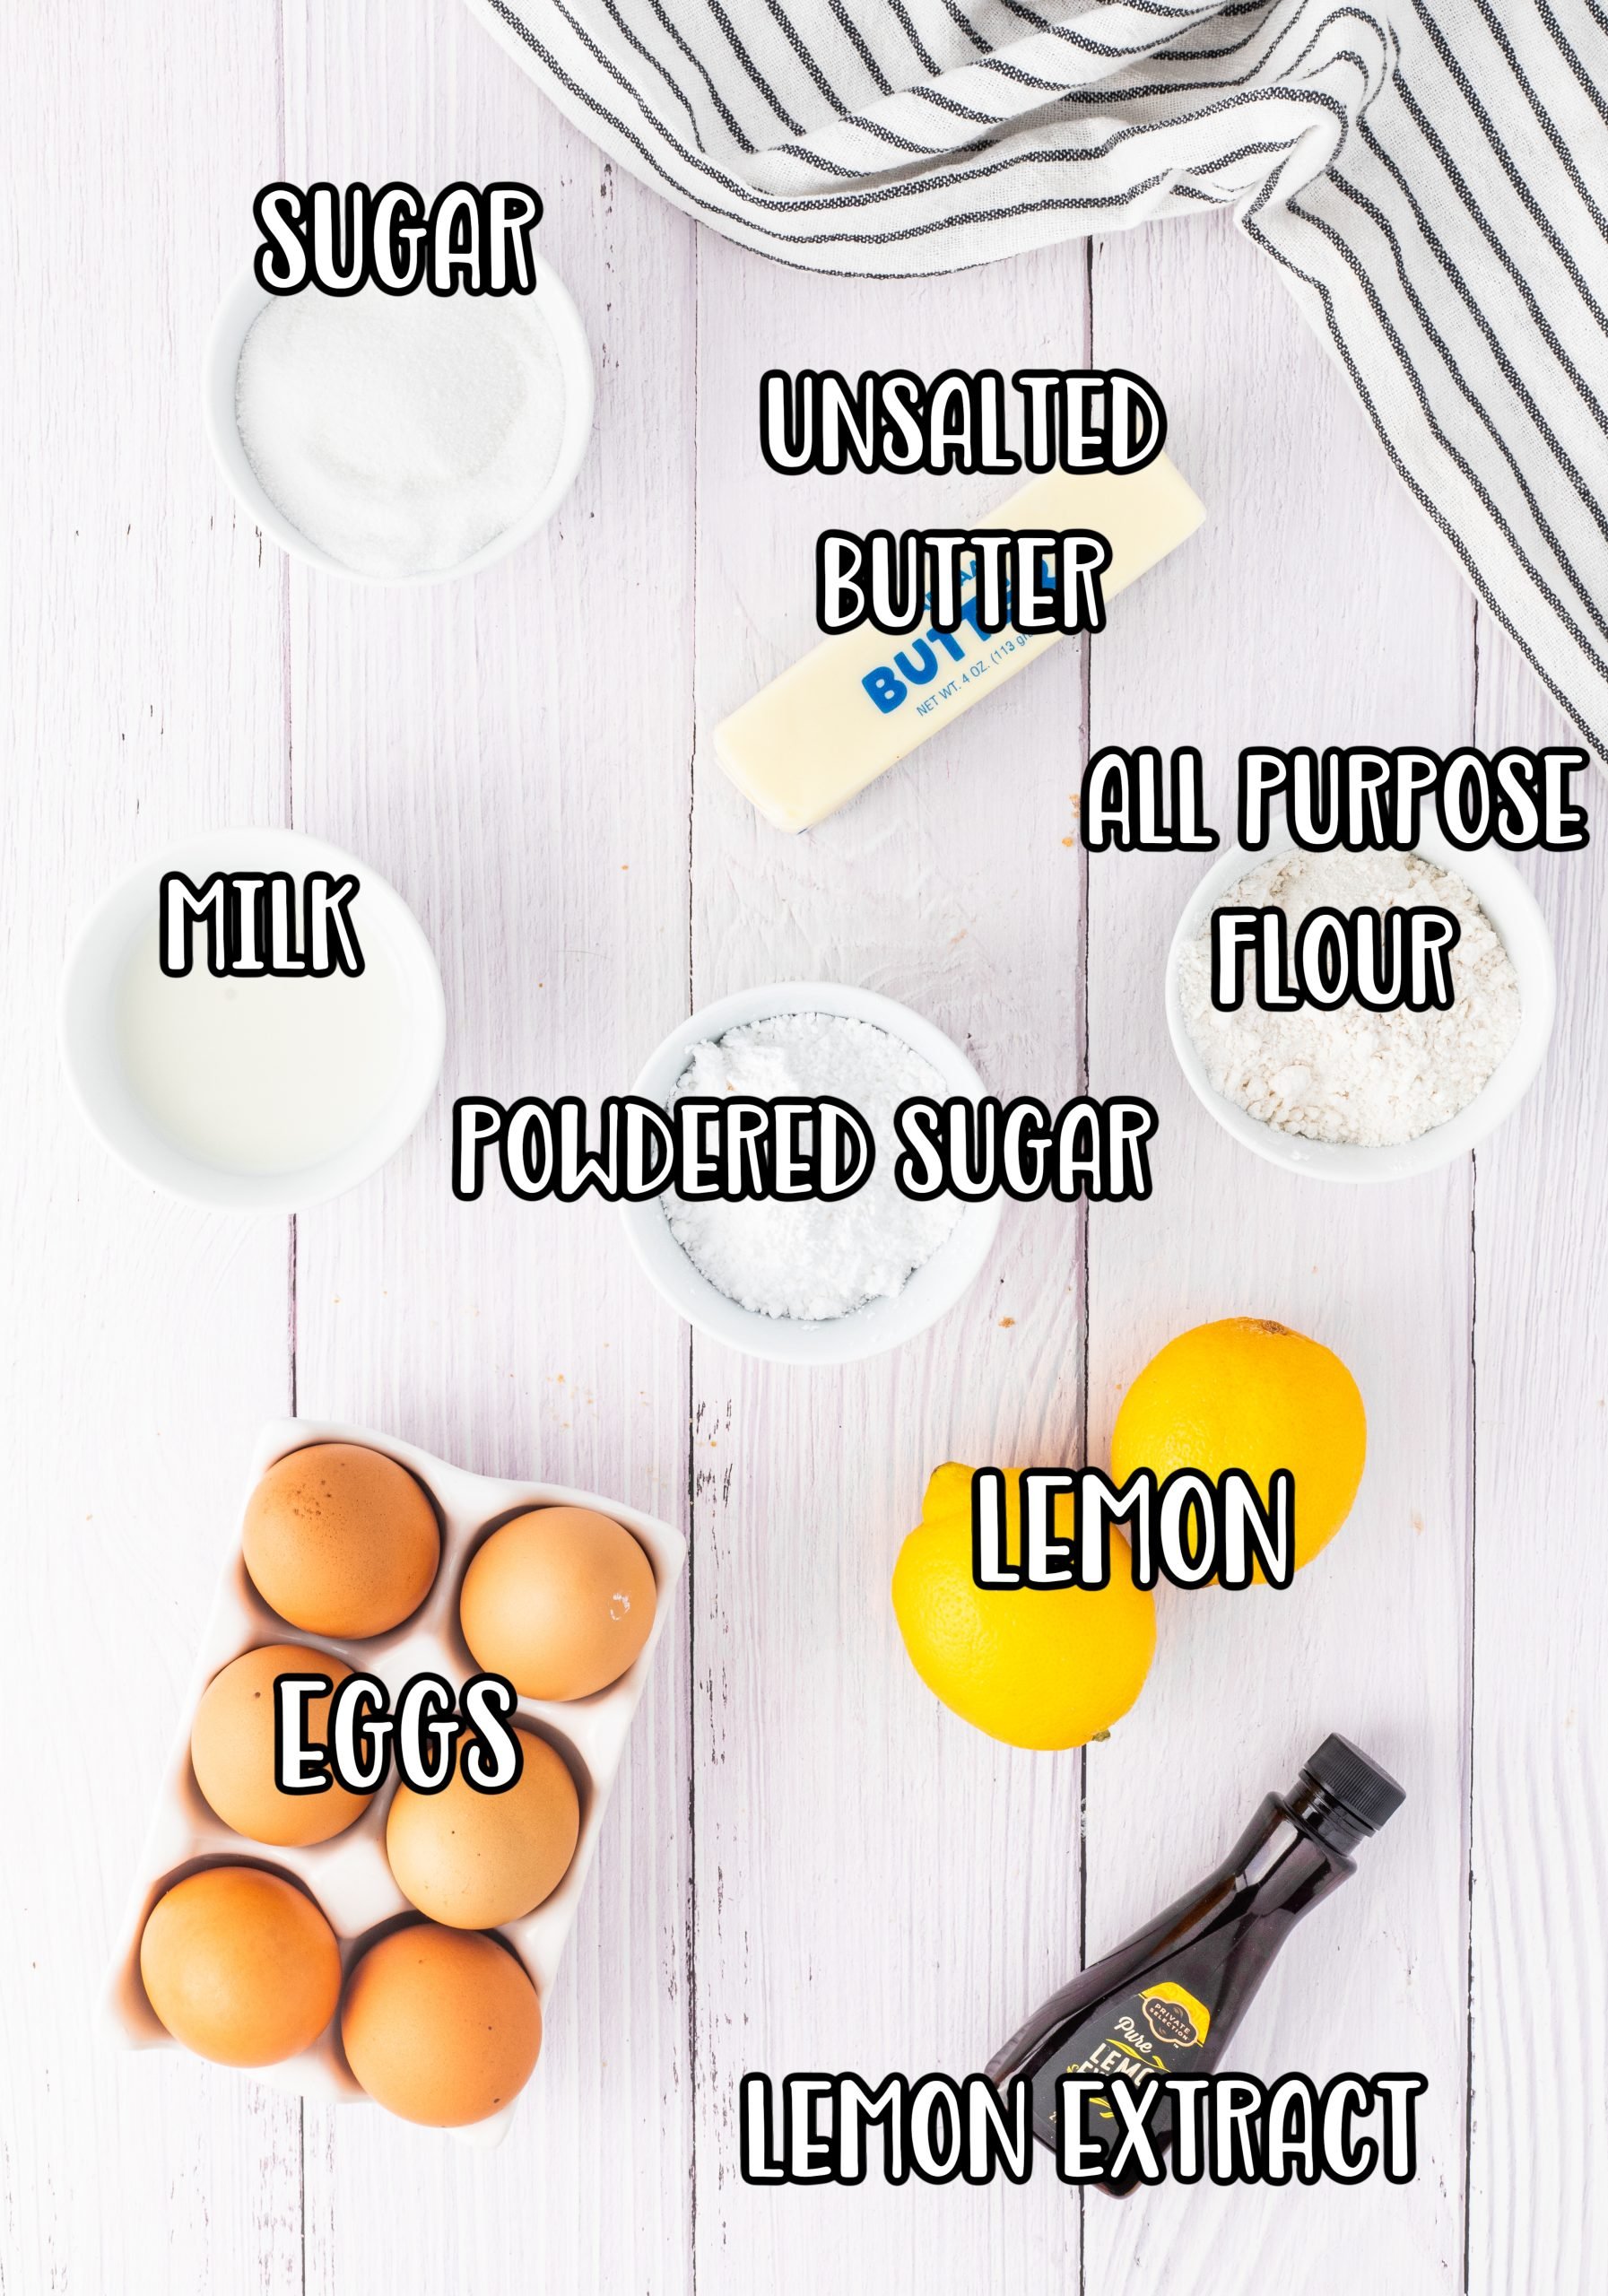 Eggs, sugar, butter, all purpose flour, lemon juice, lemon extract, lemon zest, whole milk, and powdered sugar. 